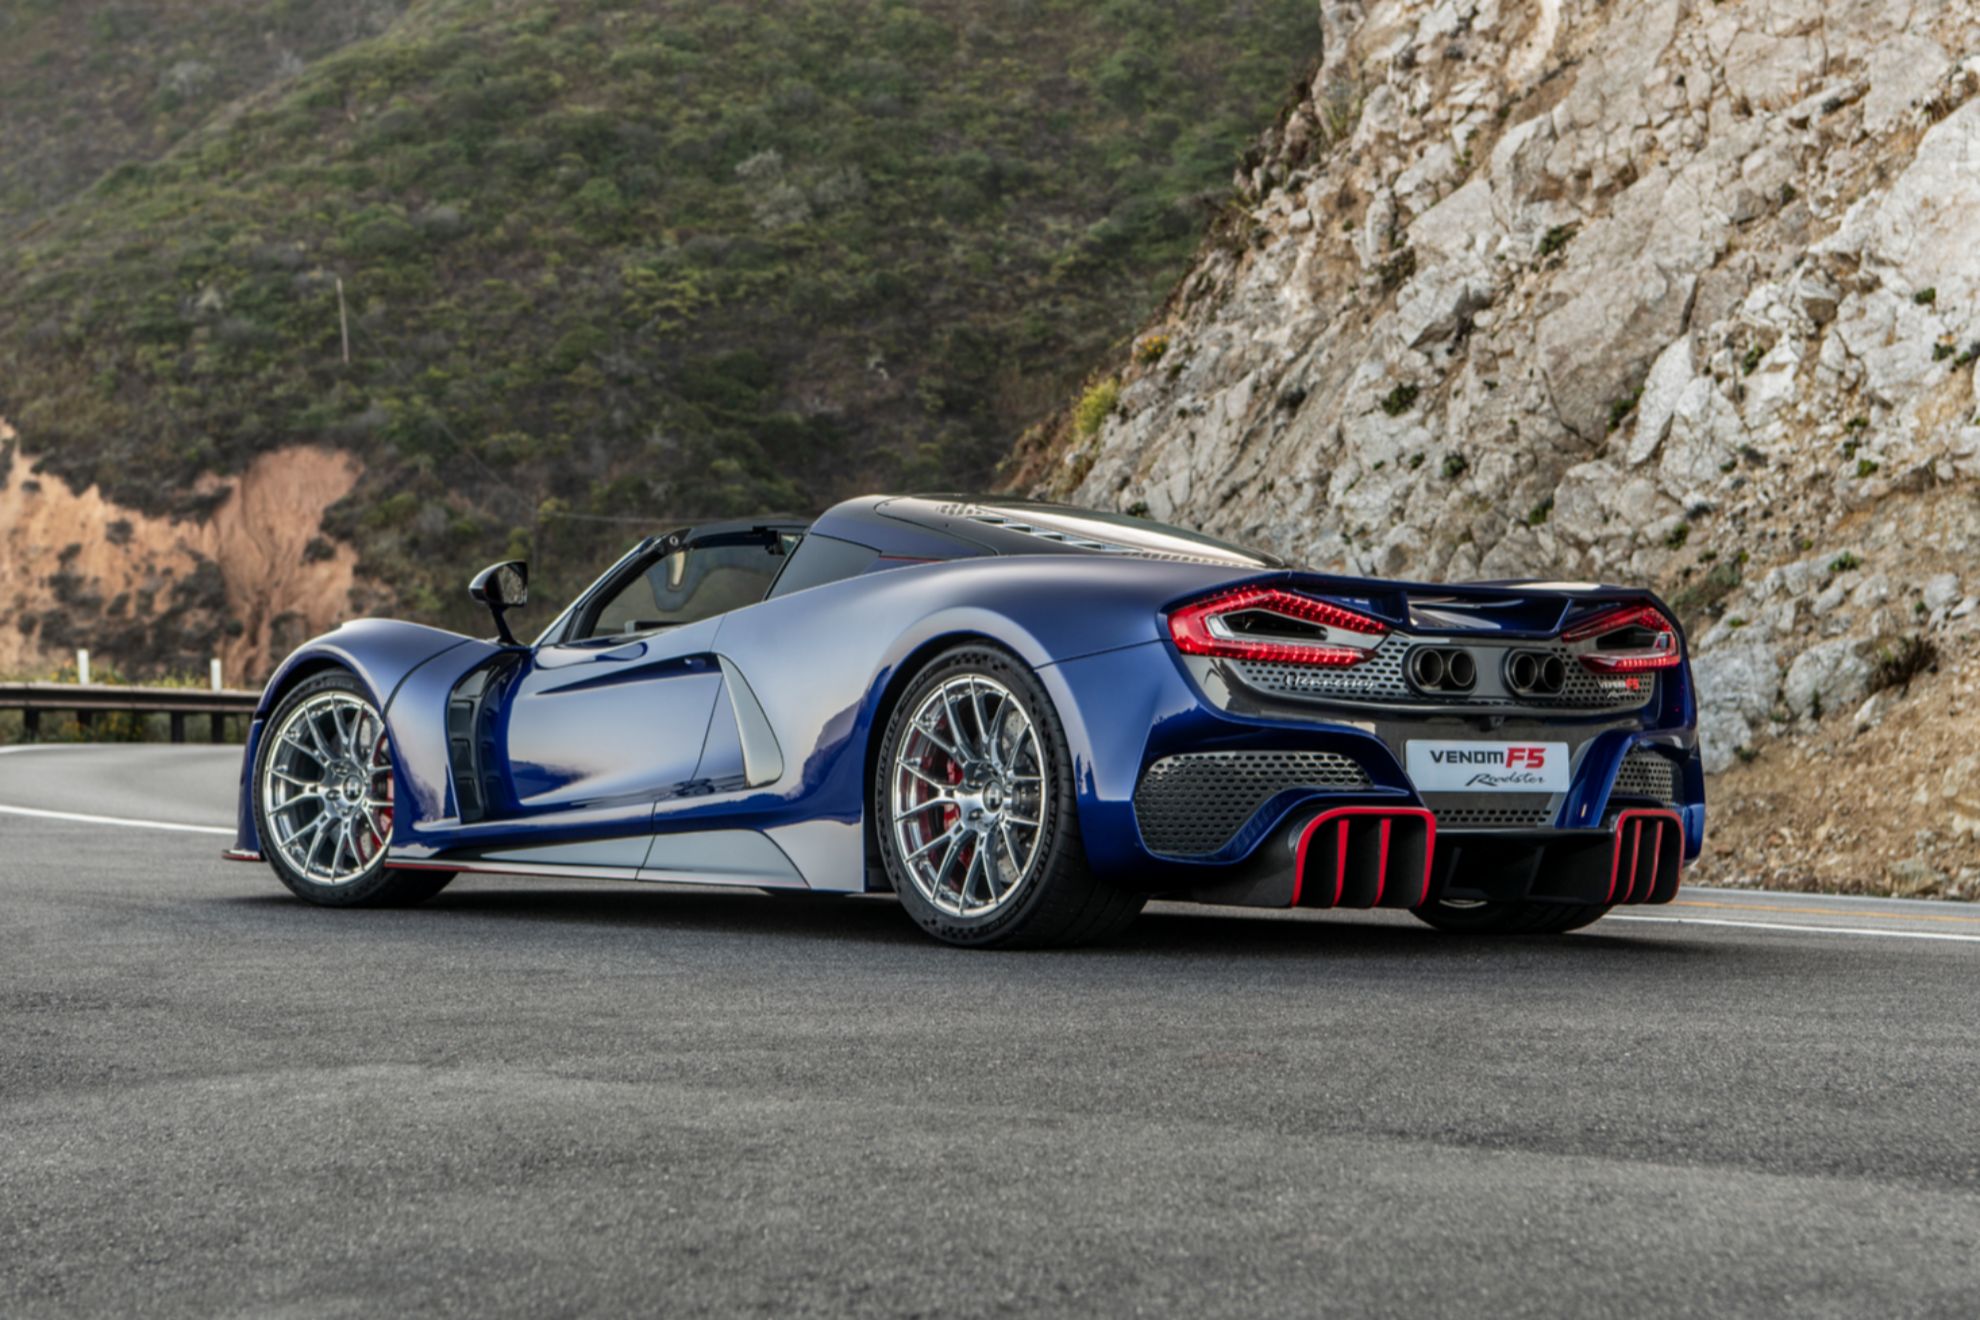 El Venom F5 Roadster se ha presentado en la Monterey Car Week de California.